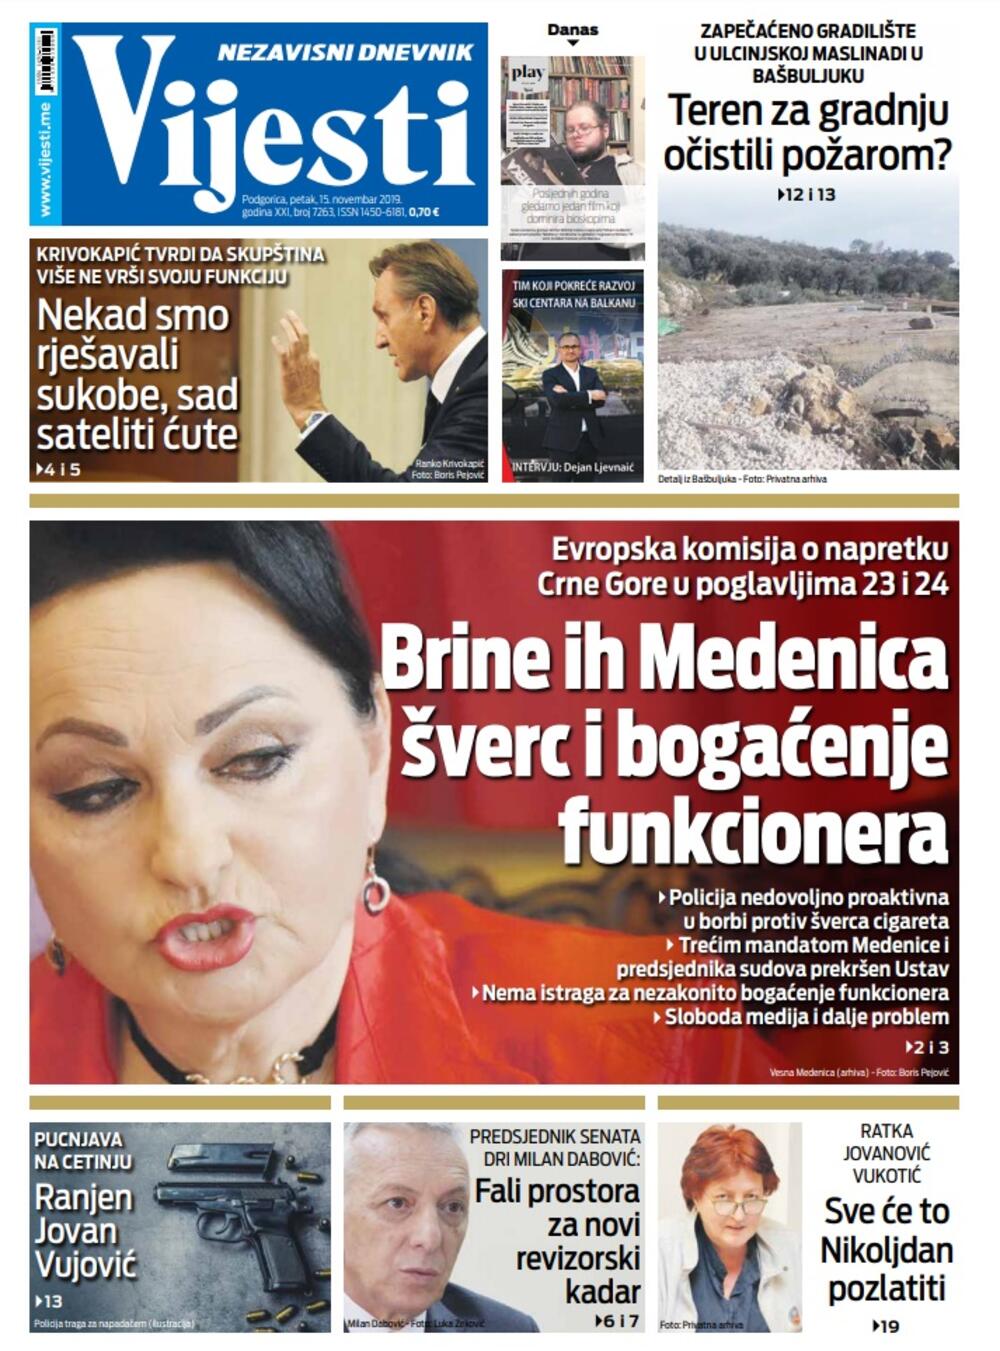 Naslovna strana "Vijesti" za 15. novembar, Foto: Vijesti